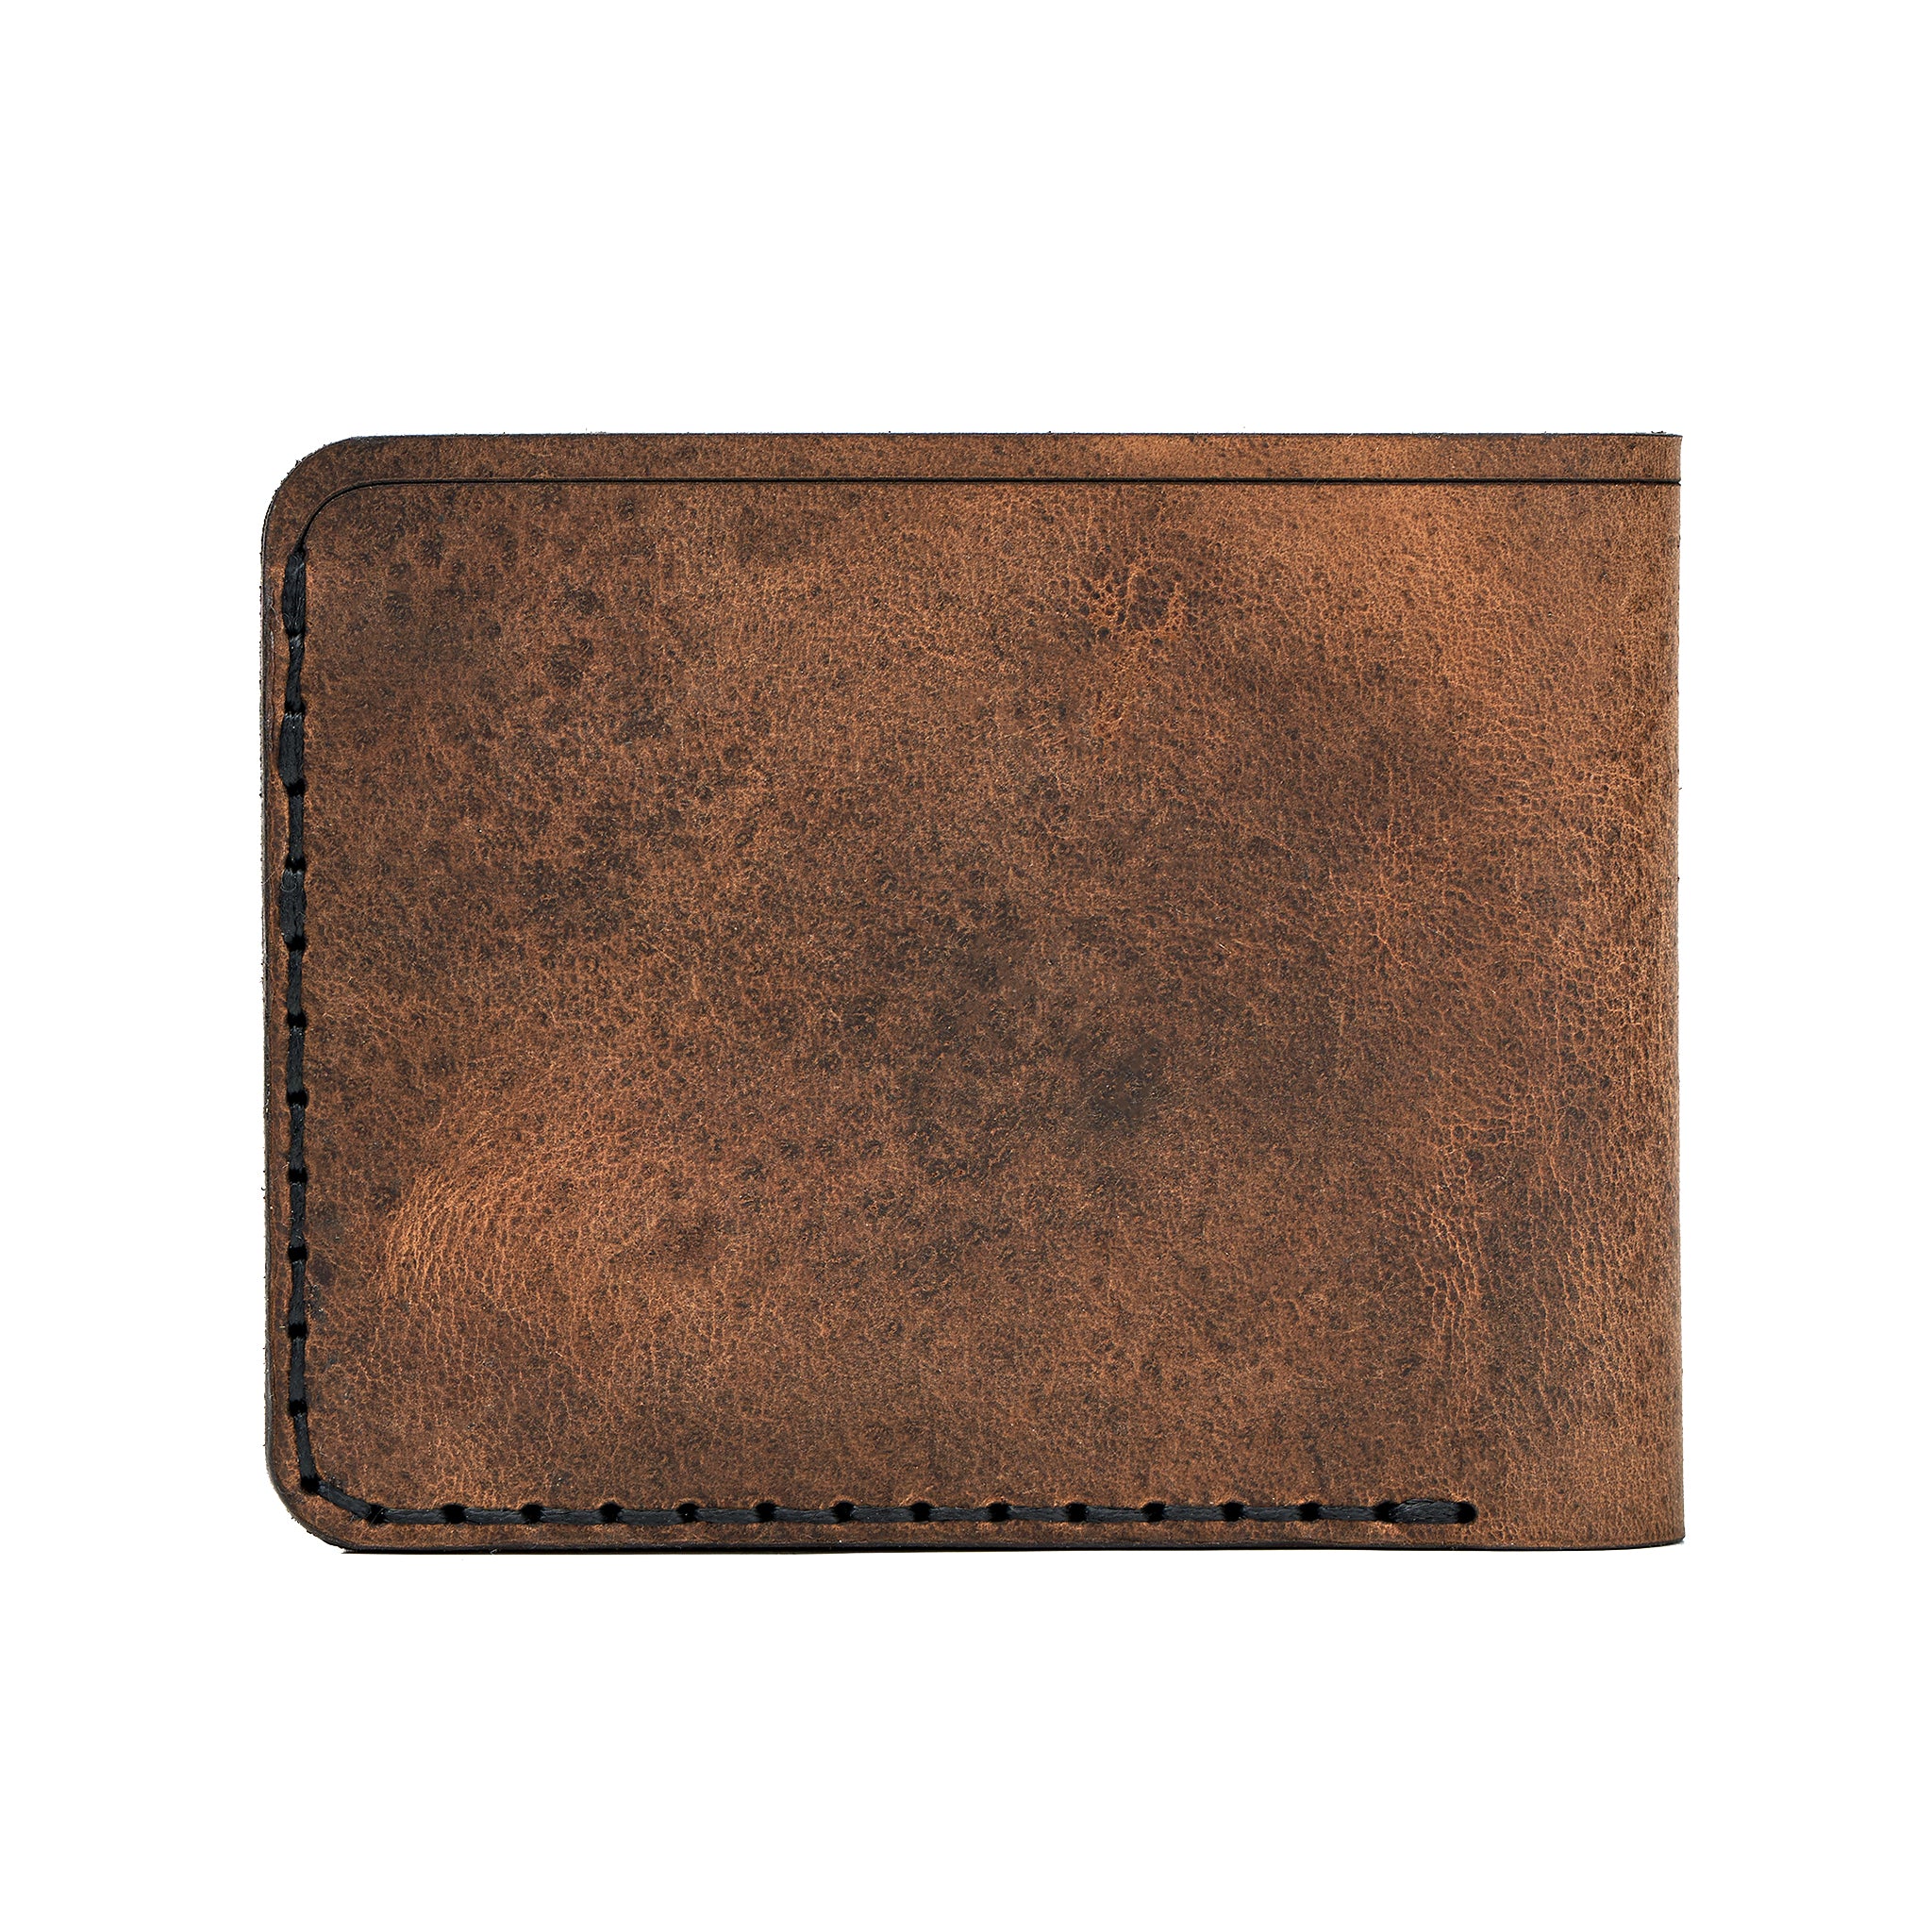 Handmade Men's Wallet 6 Card Slots Tan Pull-Up 31707881996439